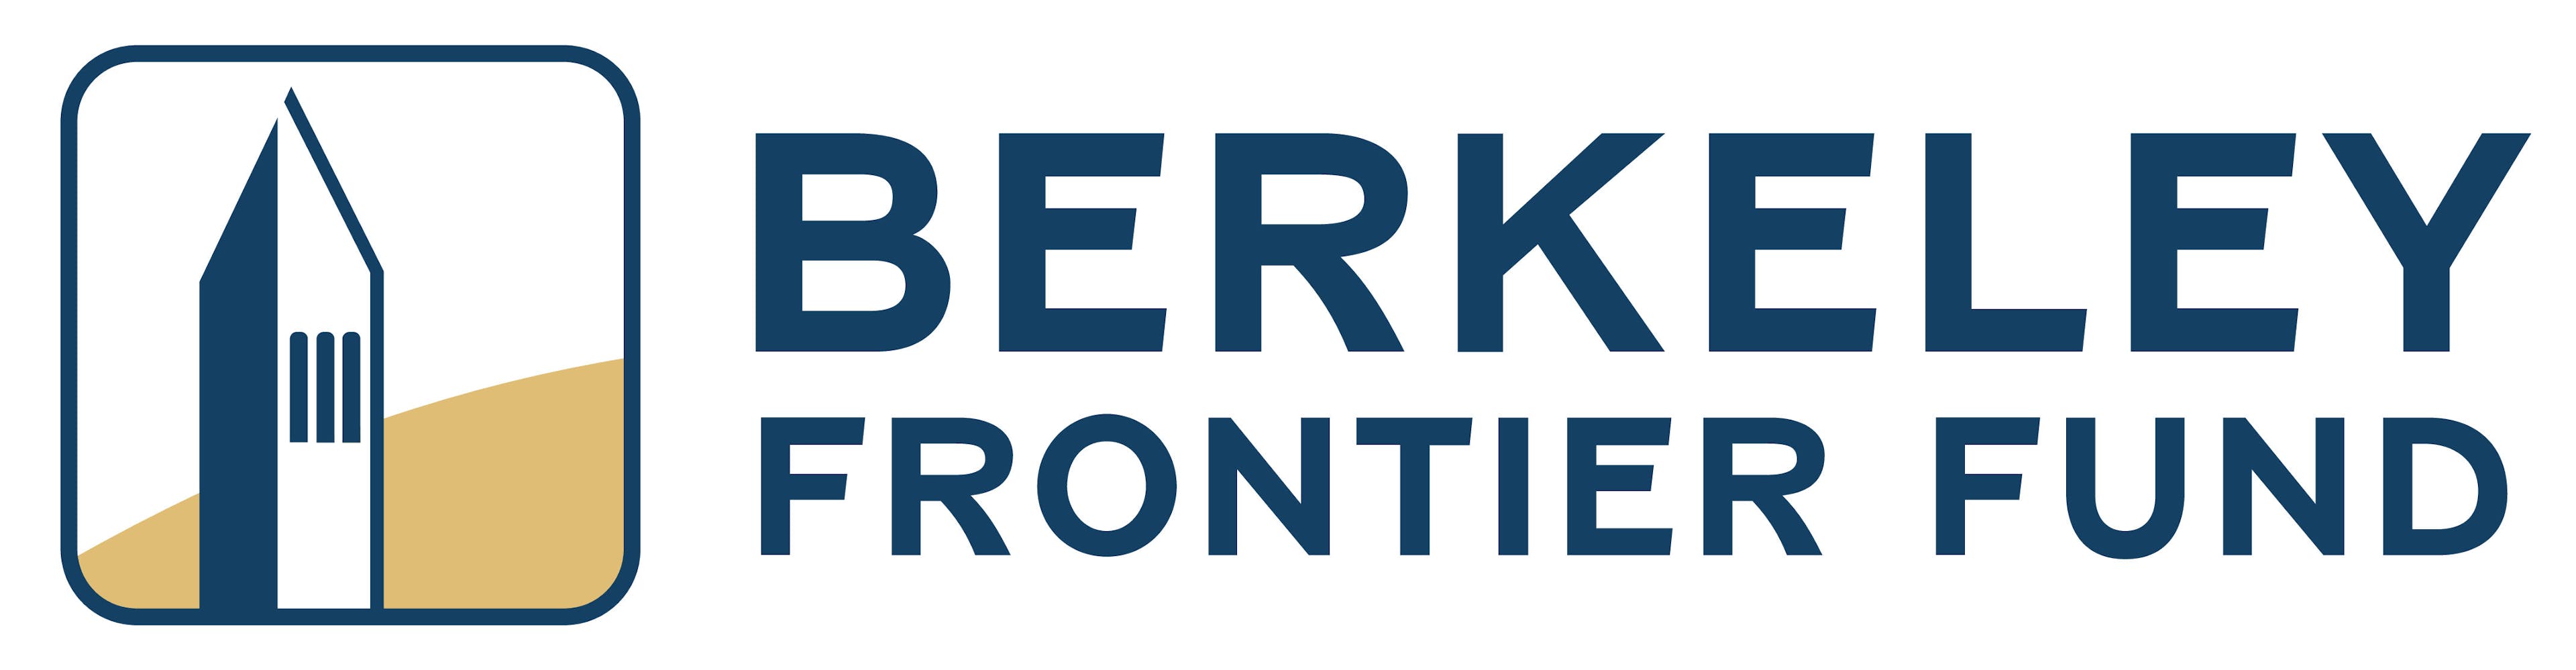 Berkeley Frontier Fund Logo